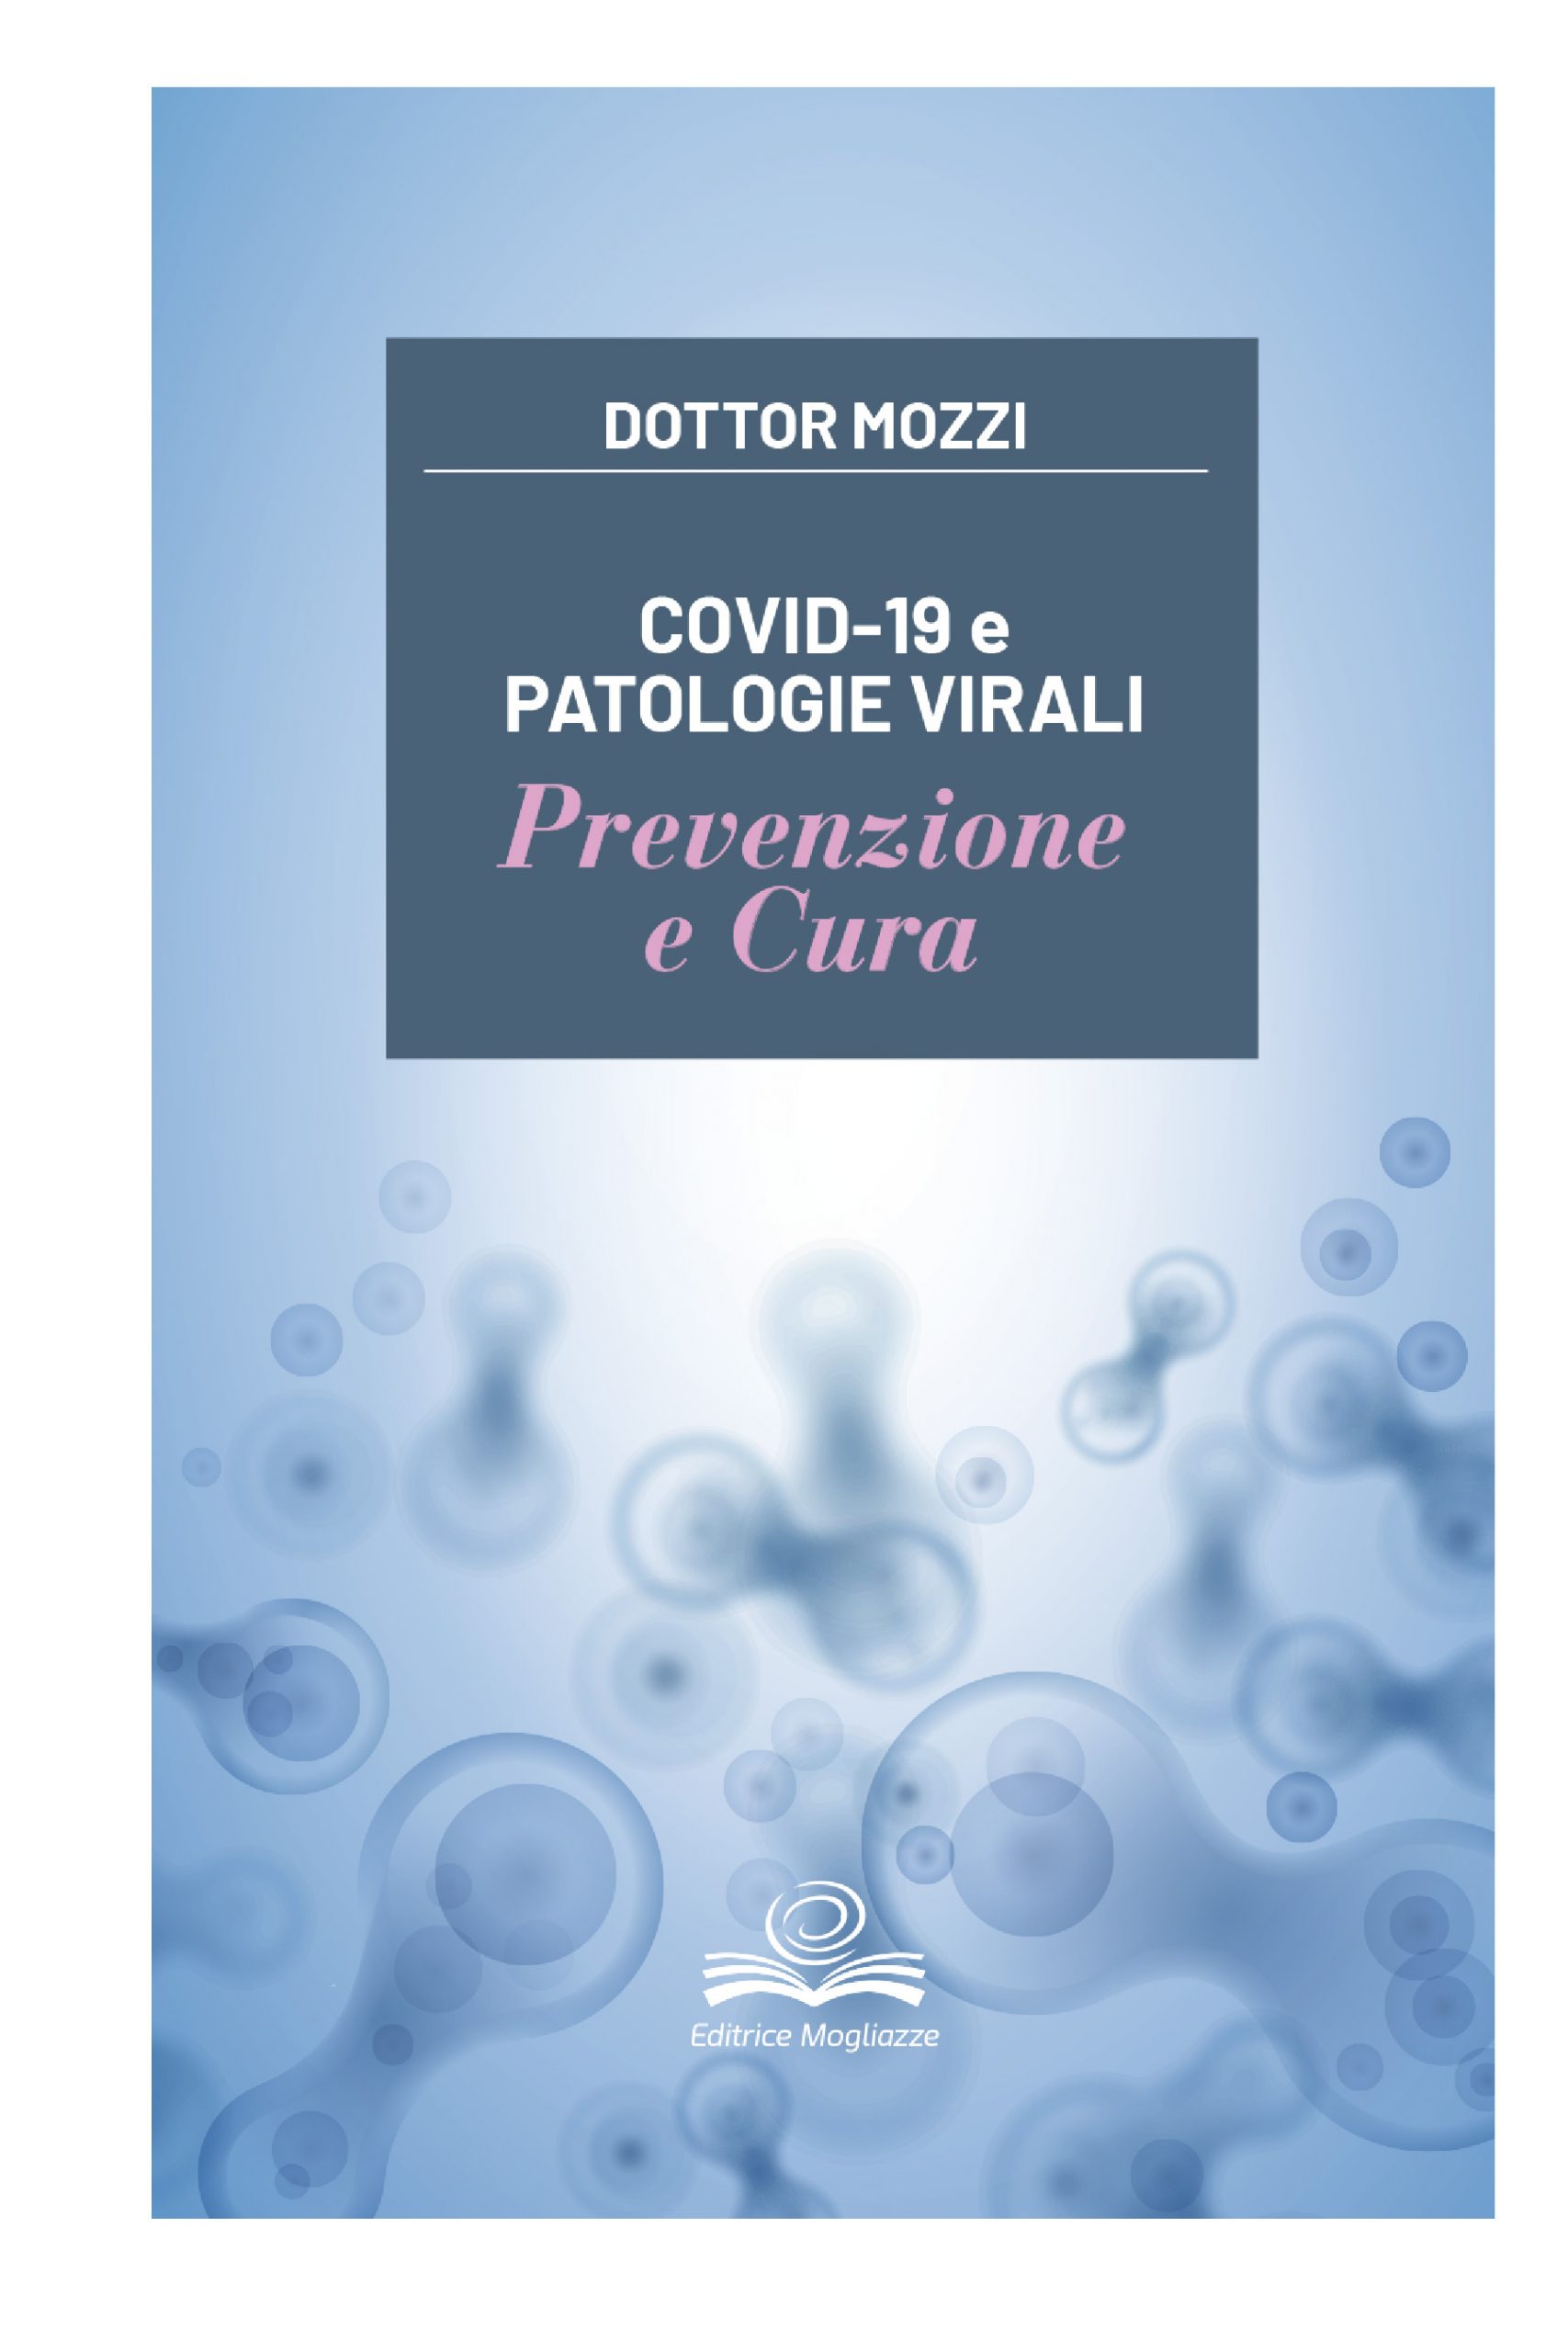 COVID-19 e patologie virali – Prevenzione e cura